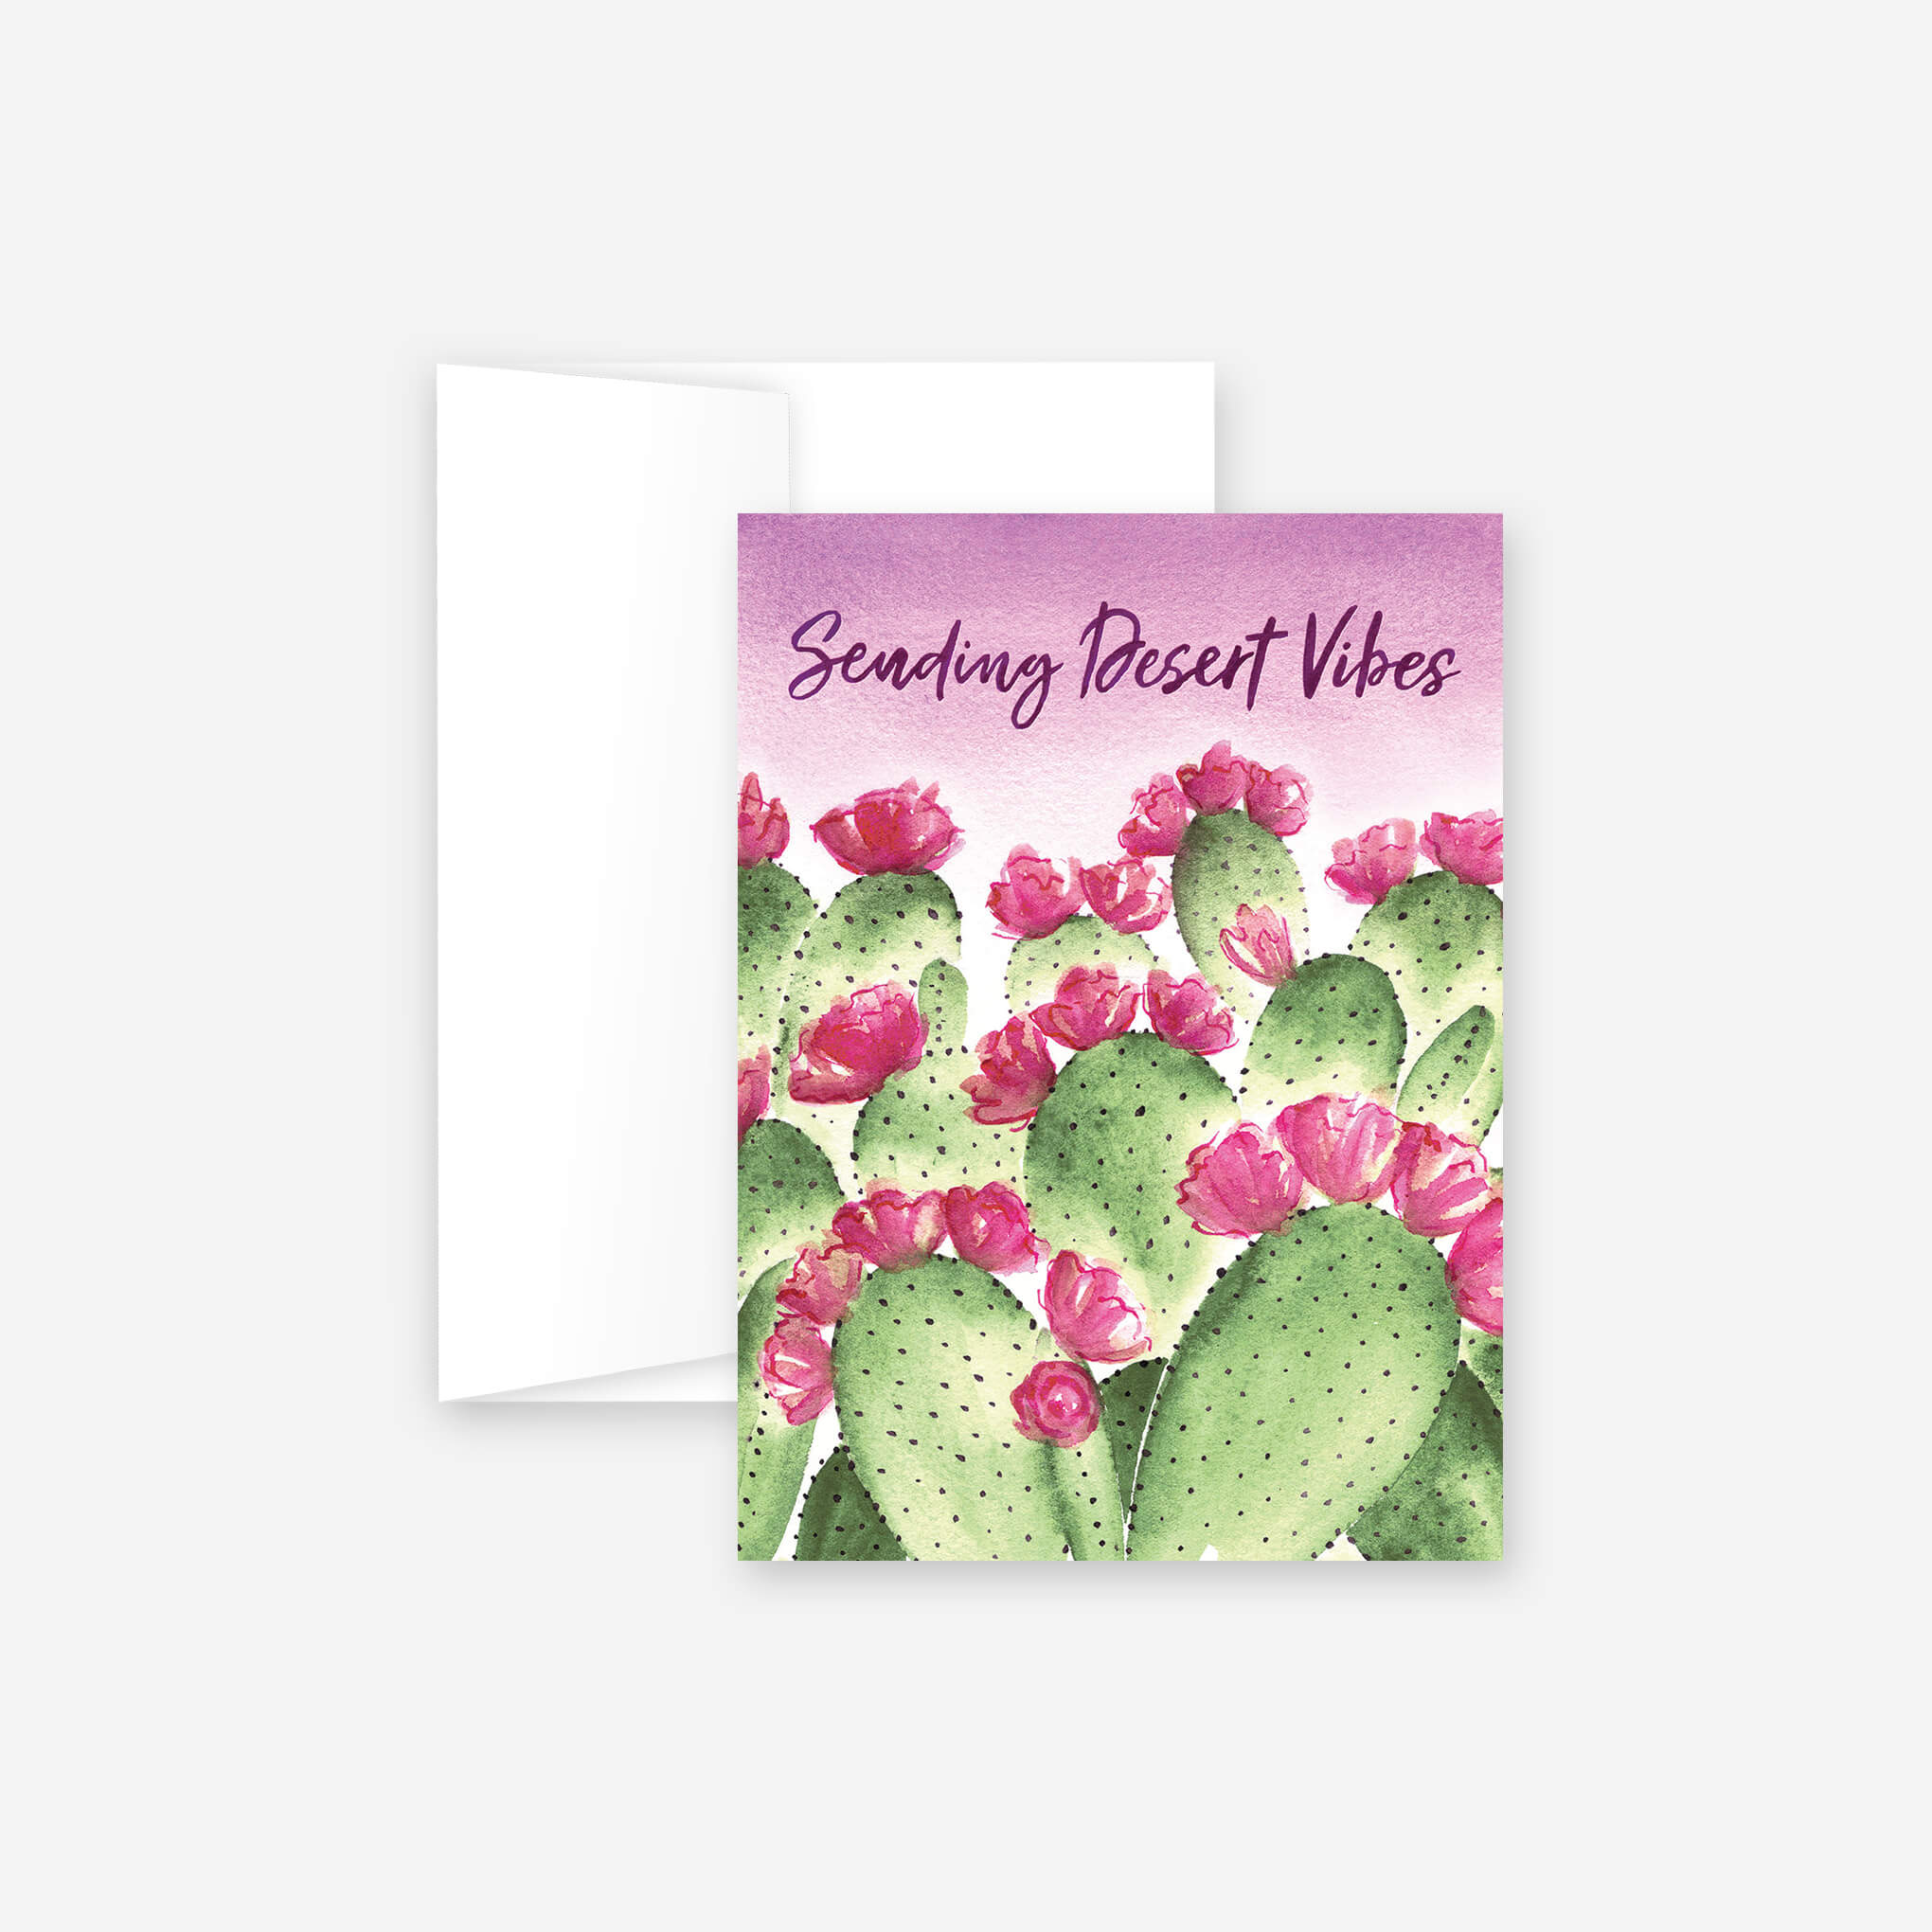 Sending Desert Vibes Greeting Card